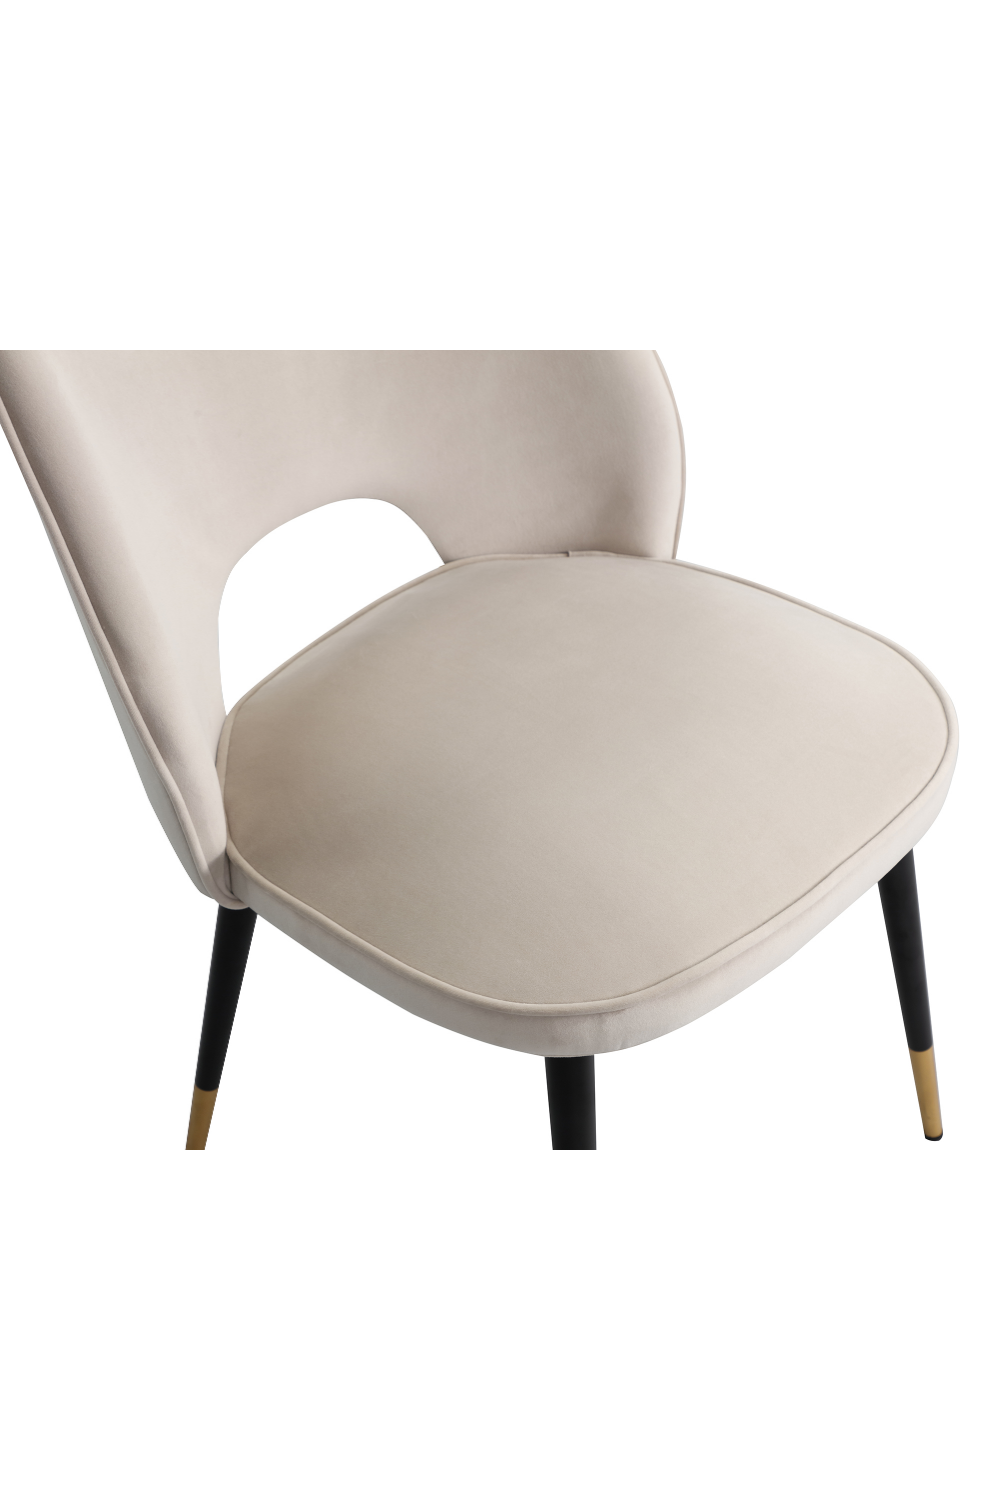 Gray Velvet Dining Chairs (2) | Liang & Eimil Jagger | OROA.com